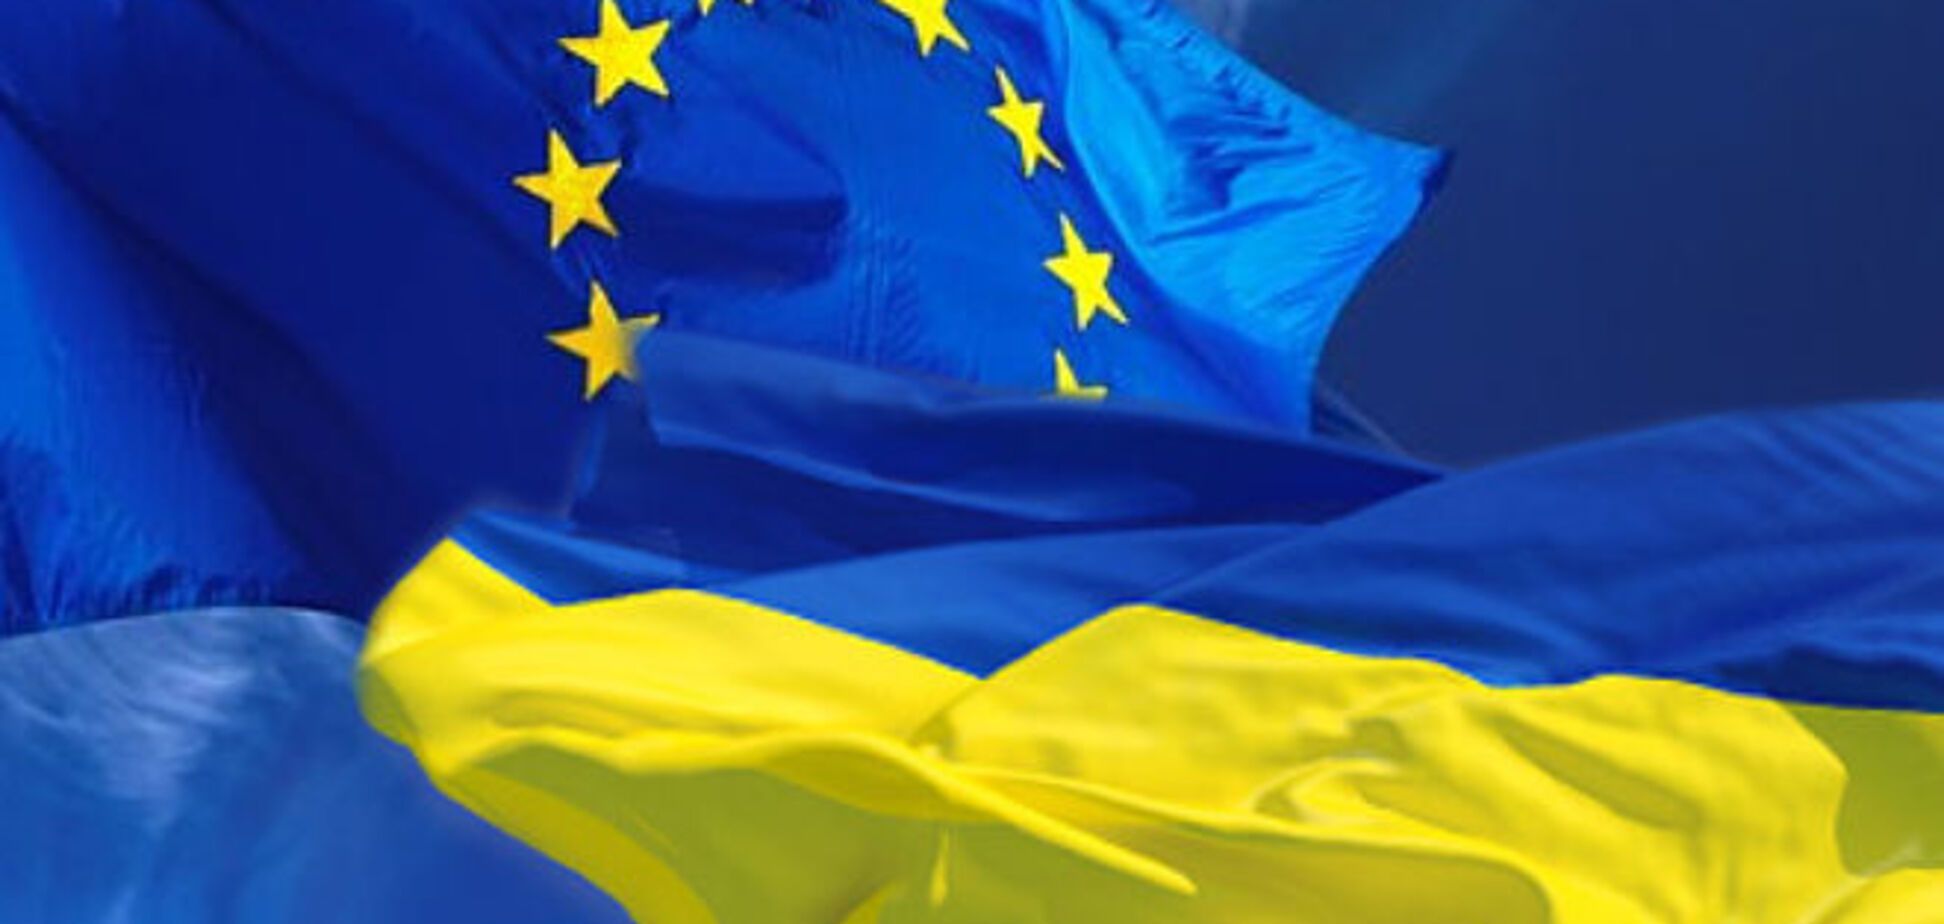 Менталитет европейца: смогут ли украинцы влиться в Старый Свет